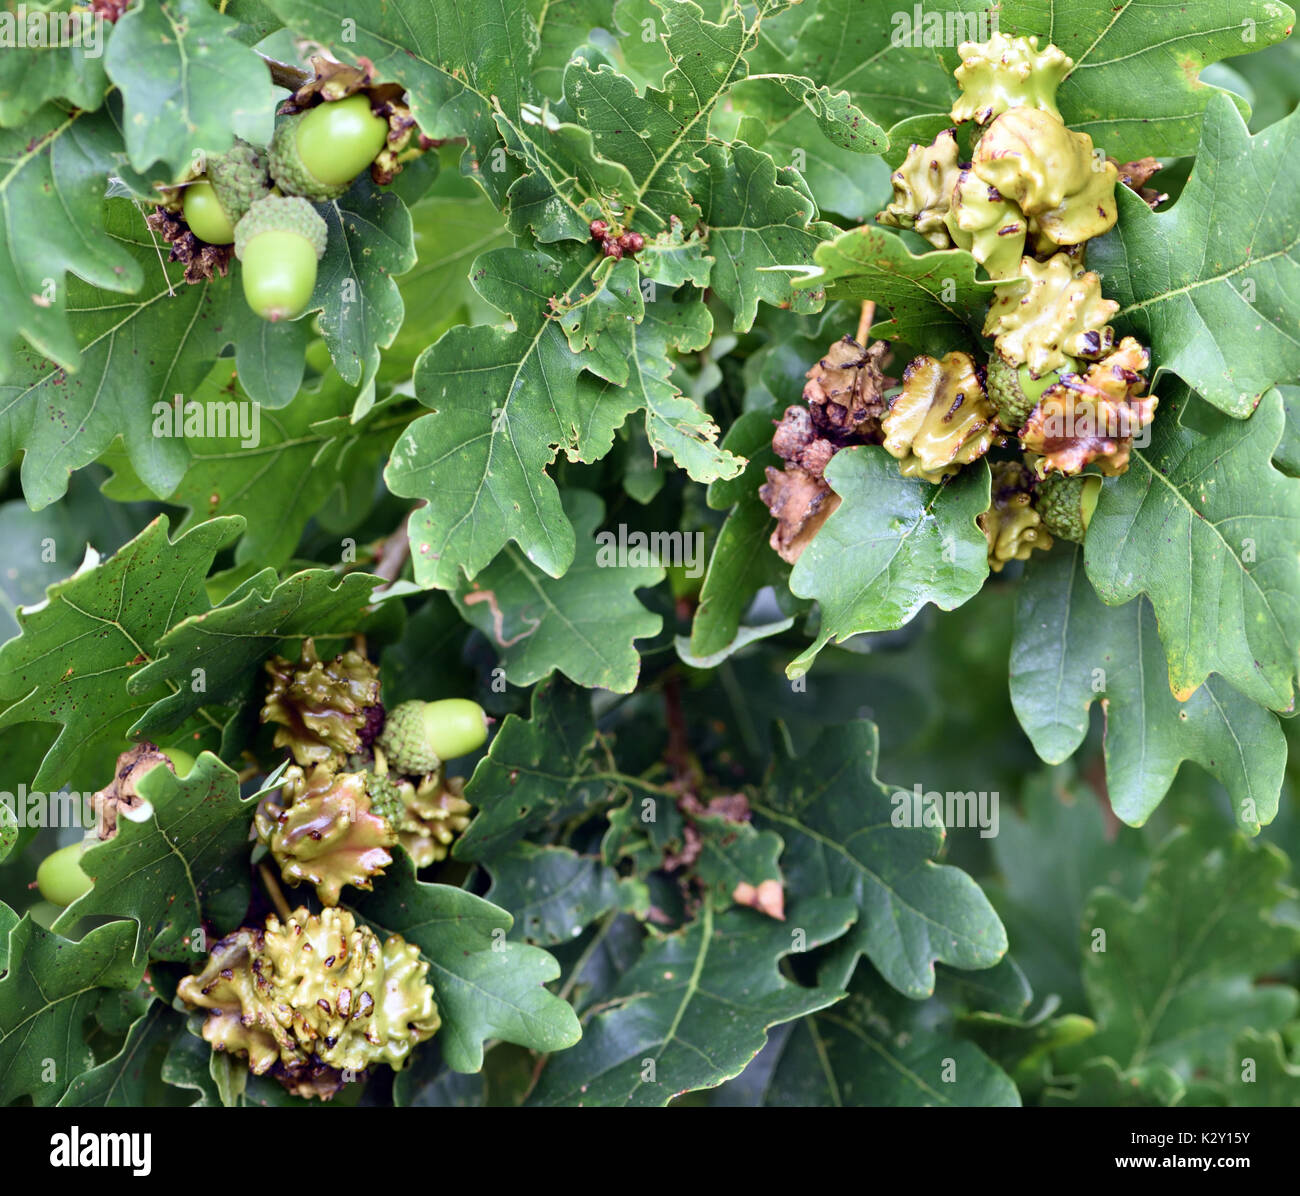 Knopper galles sur les glands d'un chêne pédonculé (Quercus robur). Ces galles sont causés par le gall wasp Andricus quercuscalicis. Bedgebury Forêt Banque D'Images